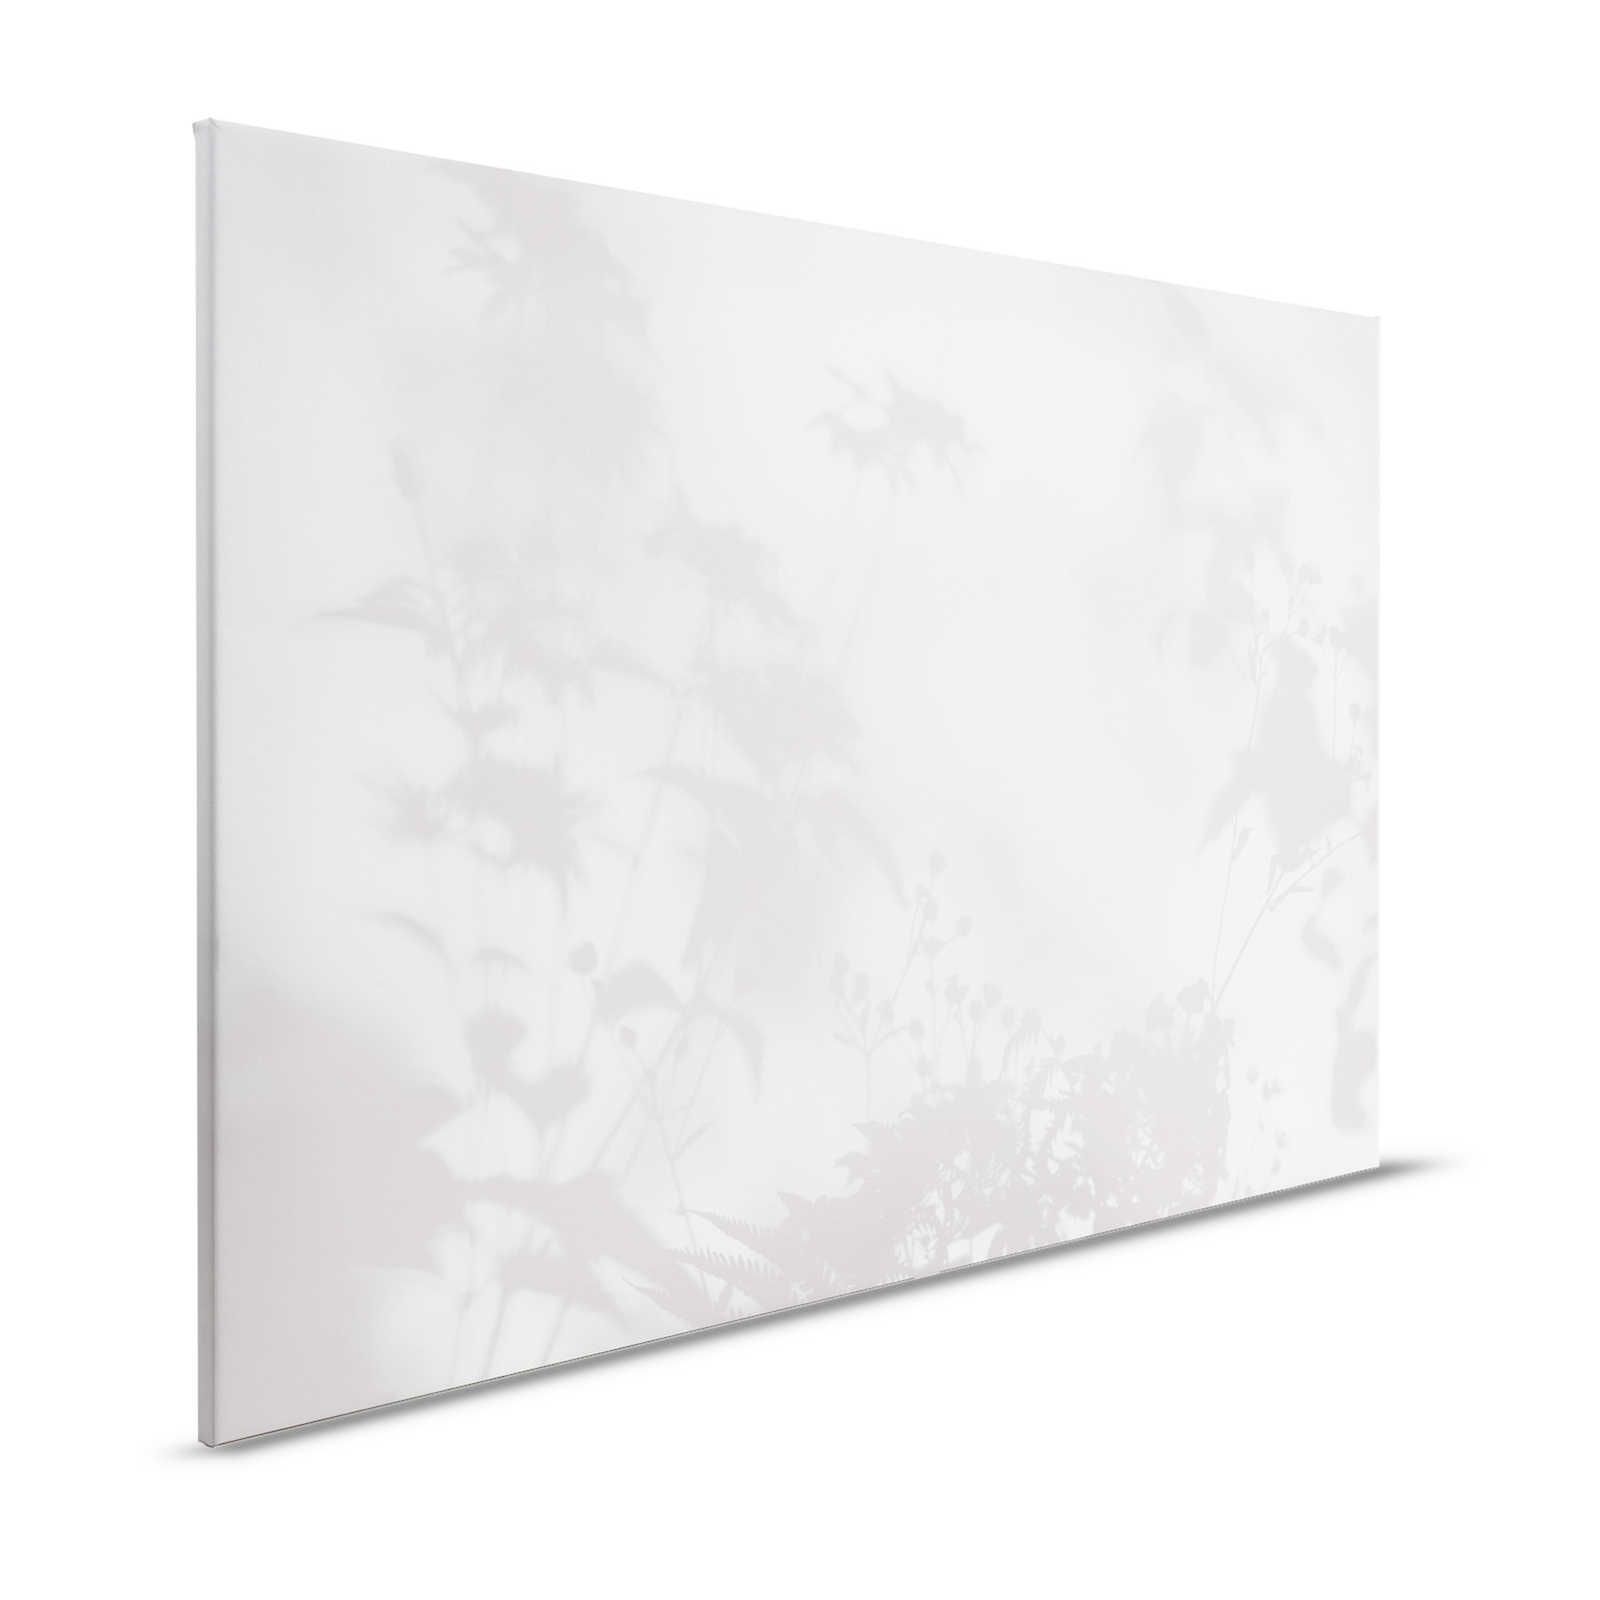 Shadow Room 2 - Lienzo Naturaleza Gris y Blanco, Diseño Desvanecido - 1.20 m x 0.80 m
